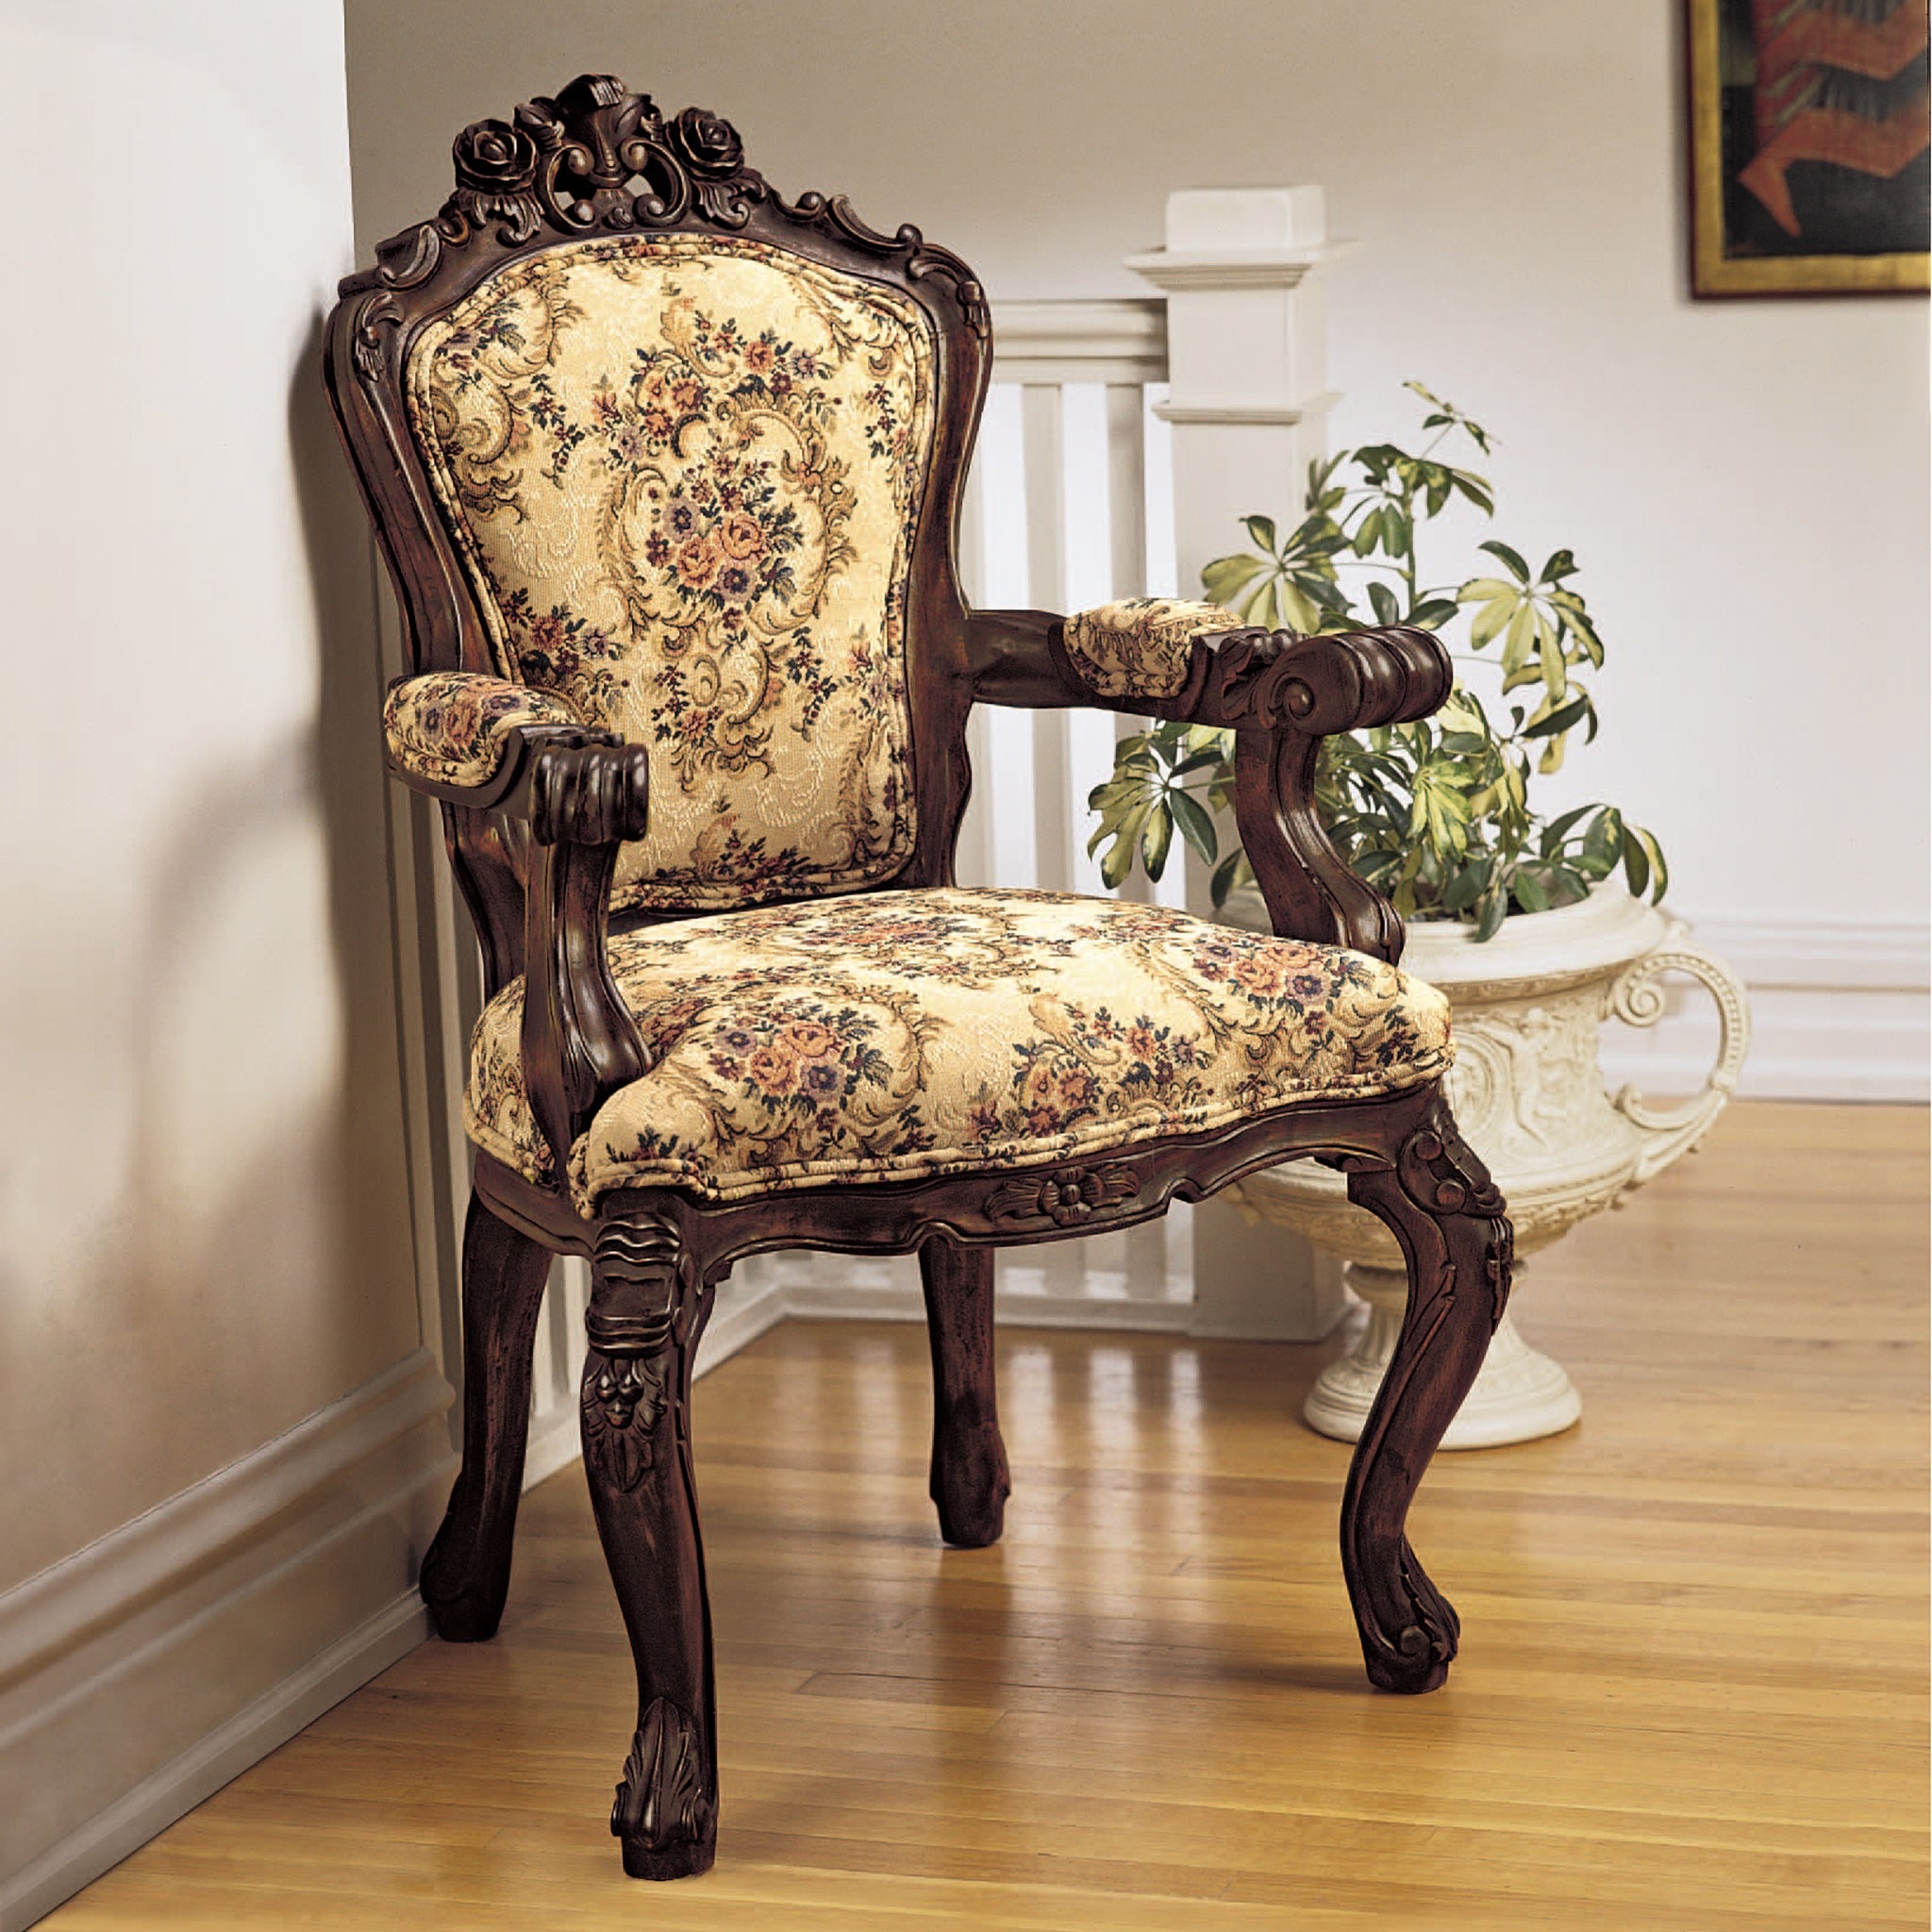 French classic Louis XV tub chair handmade of mahogany wood